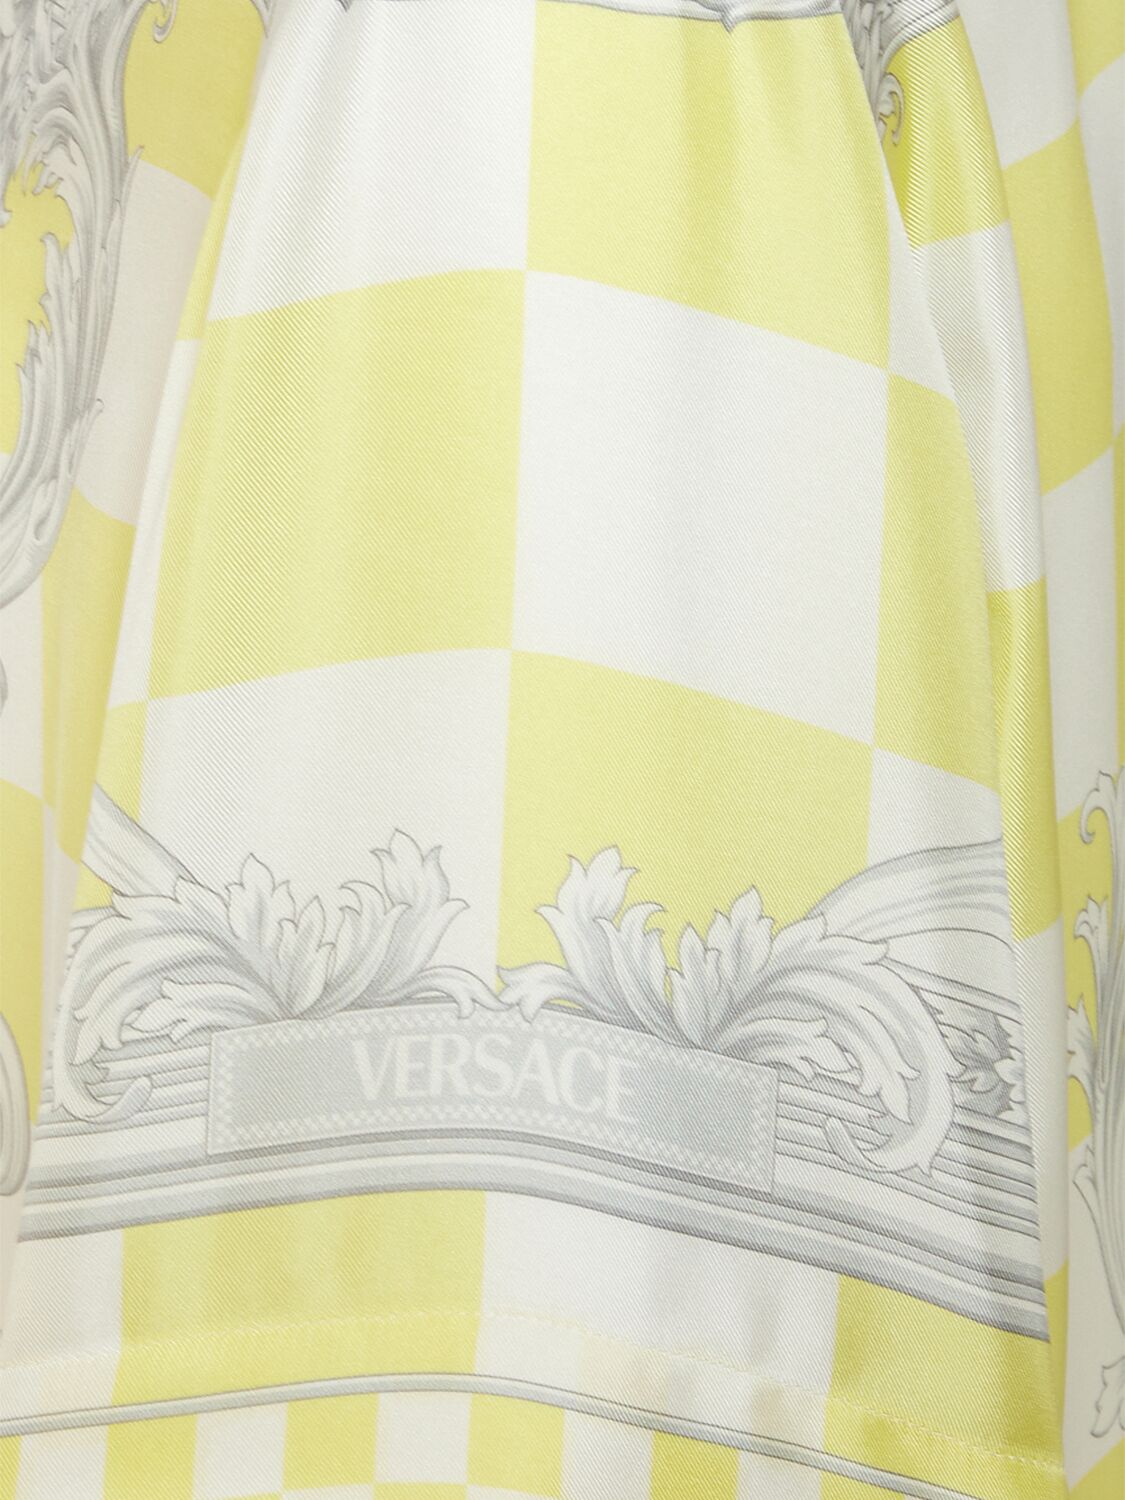 Shop Versace Medusa Printed Silk Short Sleeve Shirt In Light Yellow